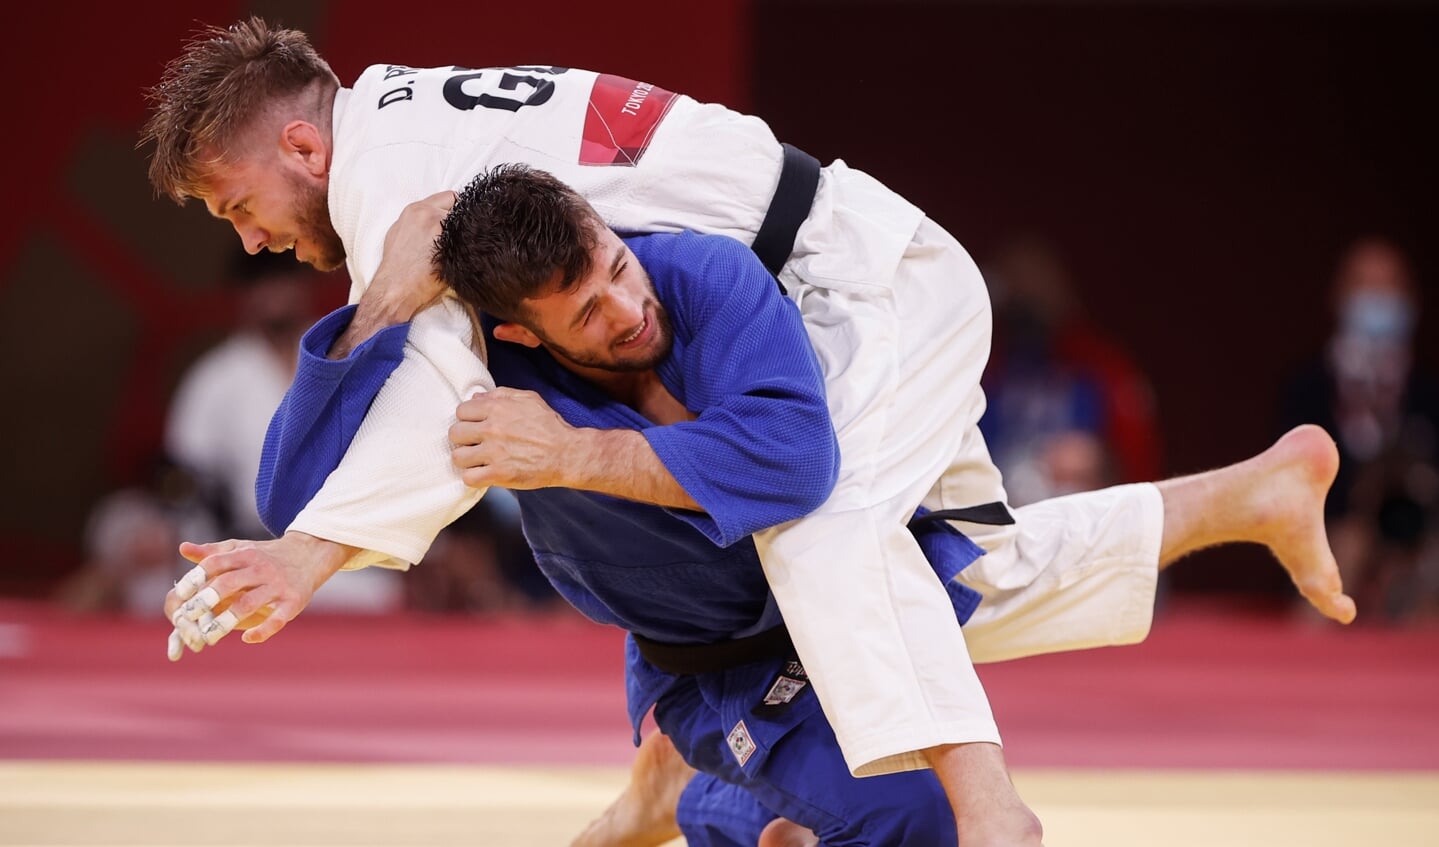 Dominic Ressel (weiß) aus Deutschland verpasste beim Judo eine Medaille.  